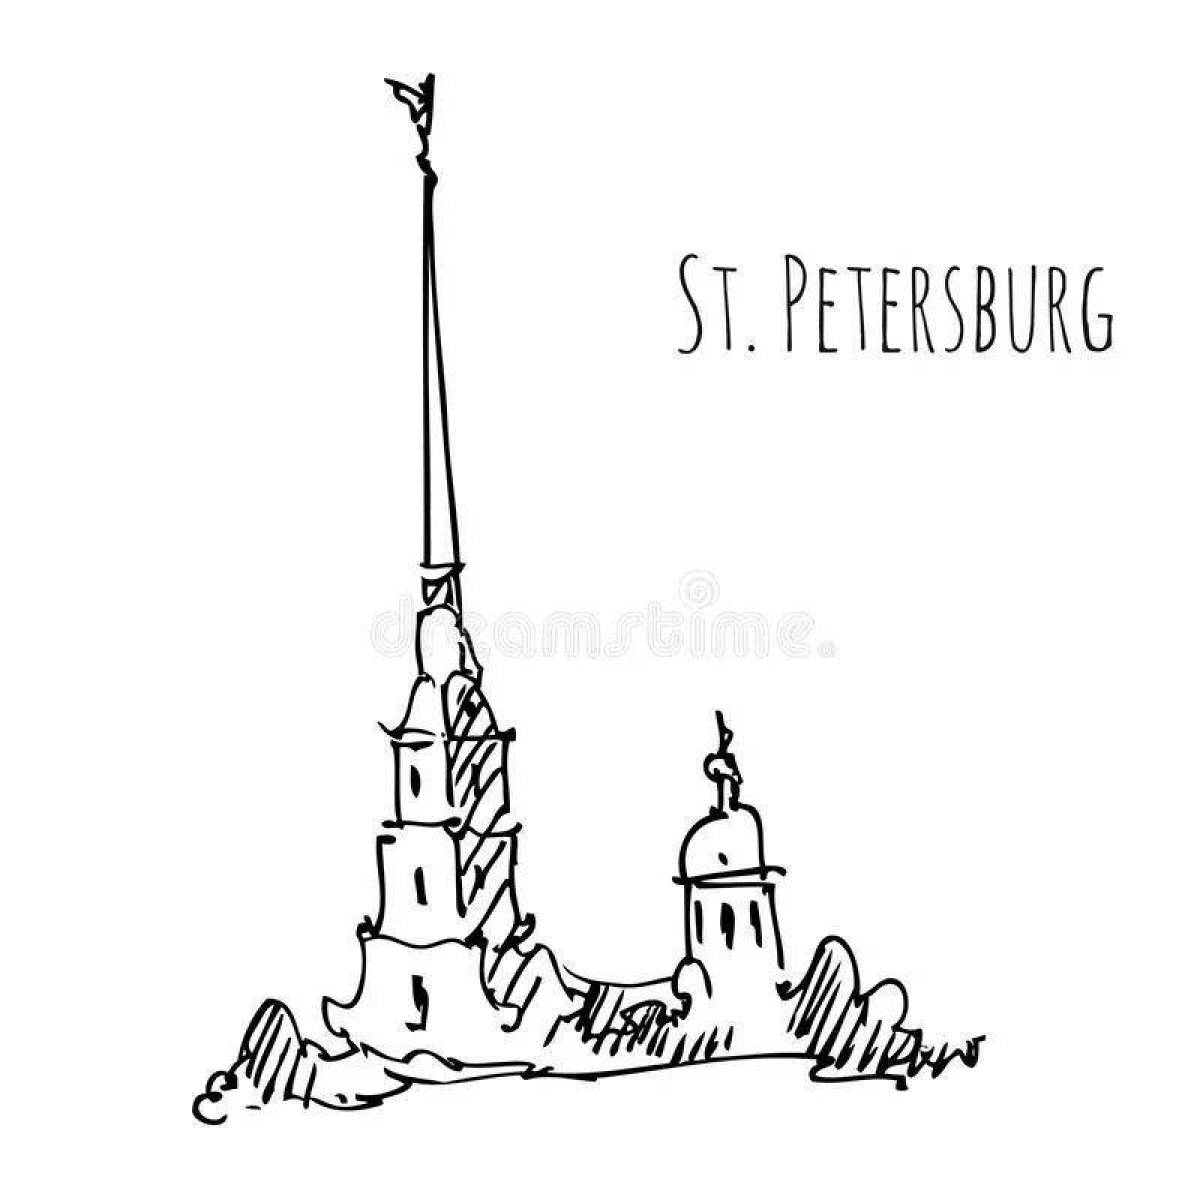 Петропавловская крепость в Санкт-Петербурге Графика